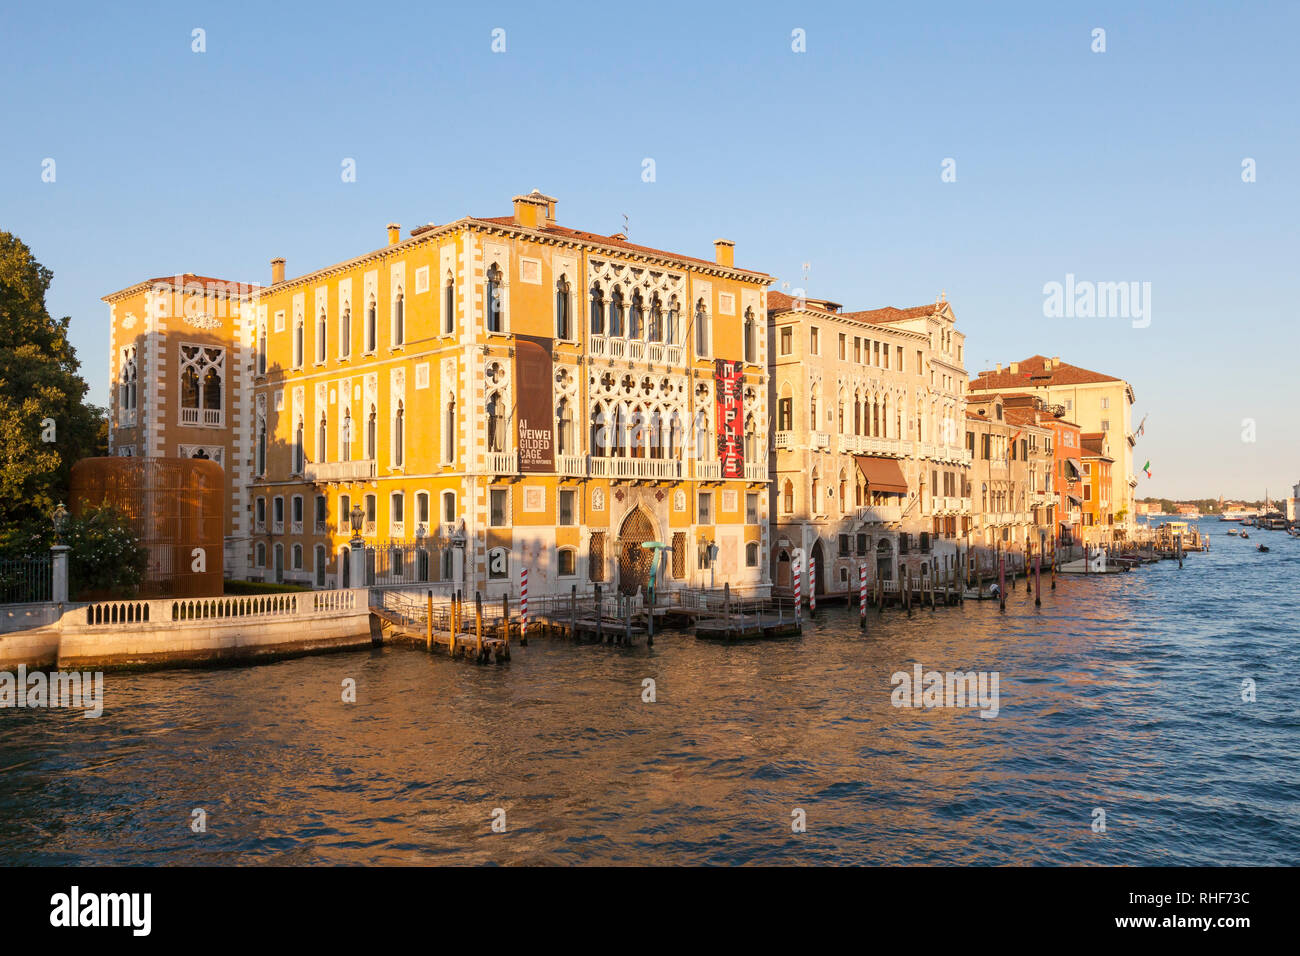 Canal Grande al tramonto con una vista del Palazzo Cavalli-Franchetti , San Marco, Venezia, Veneto, Italia con riflessioni a ora d'oro Foto Stock